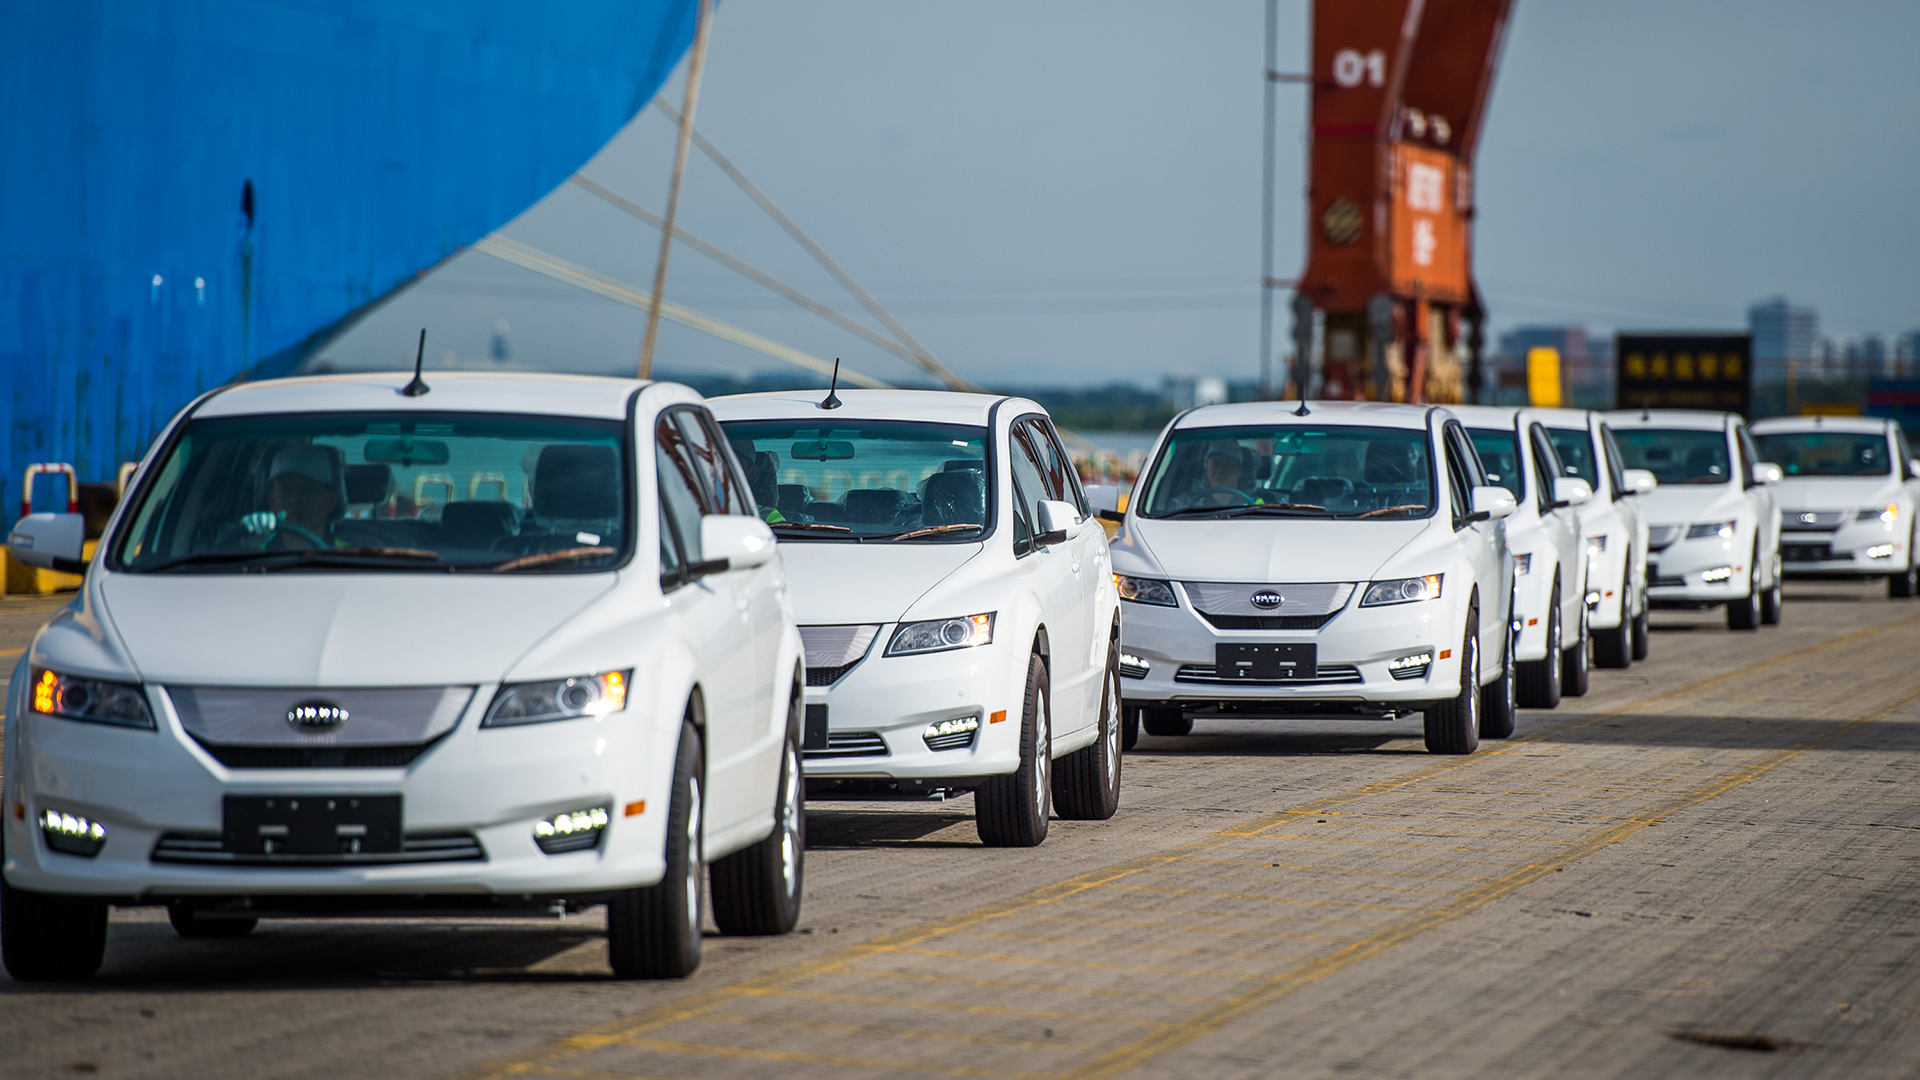 Elektroautos des Typs BYD e6 stehen aufgereiht im Hafen in Shenzhen City. | picture alliance/dpa/HPIC